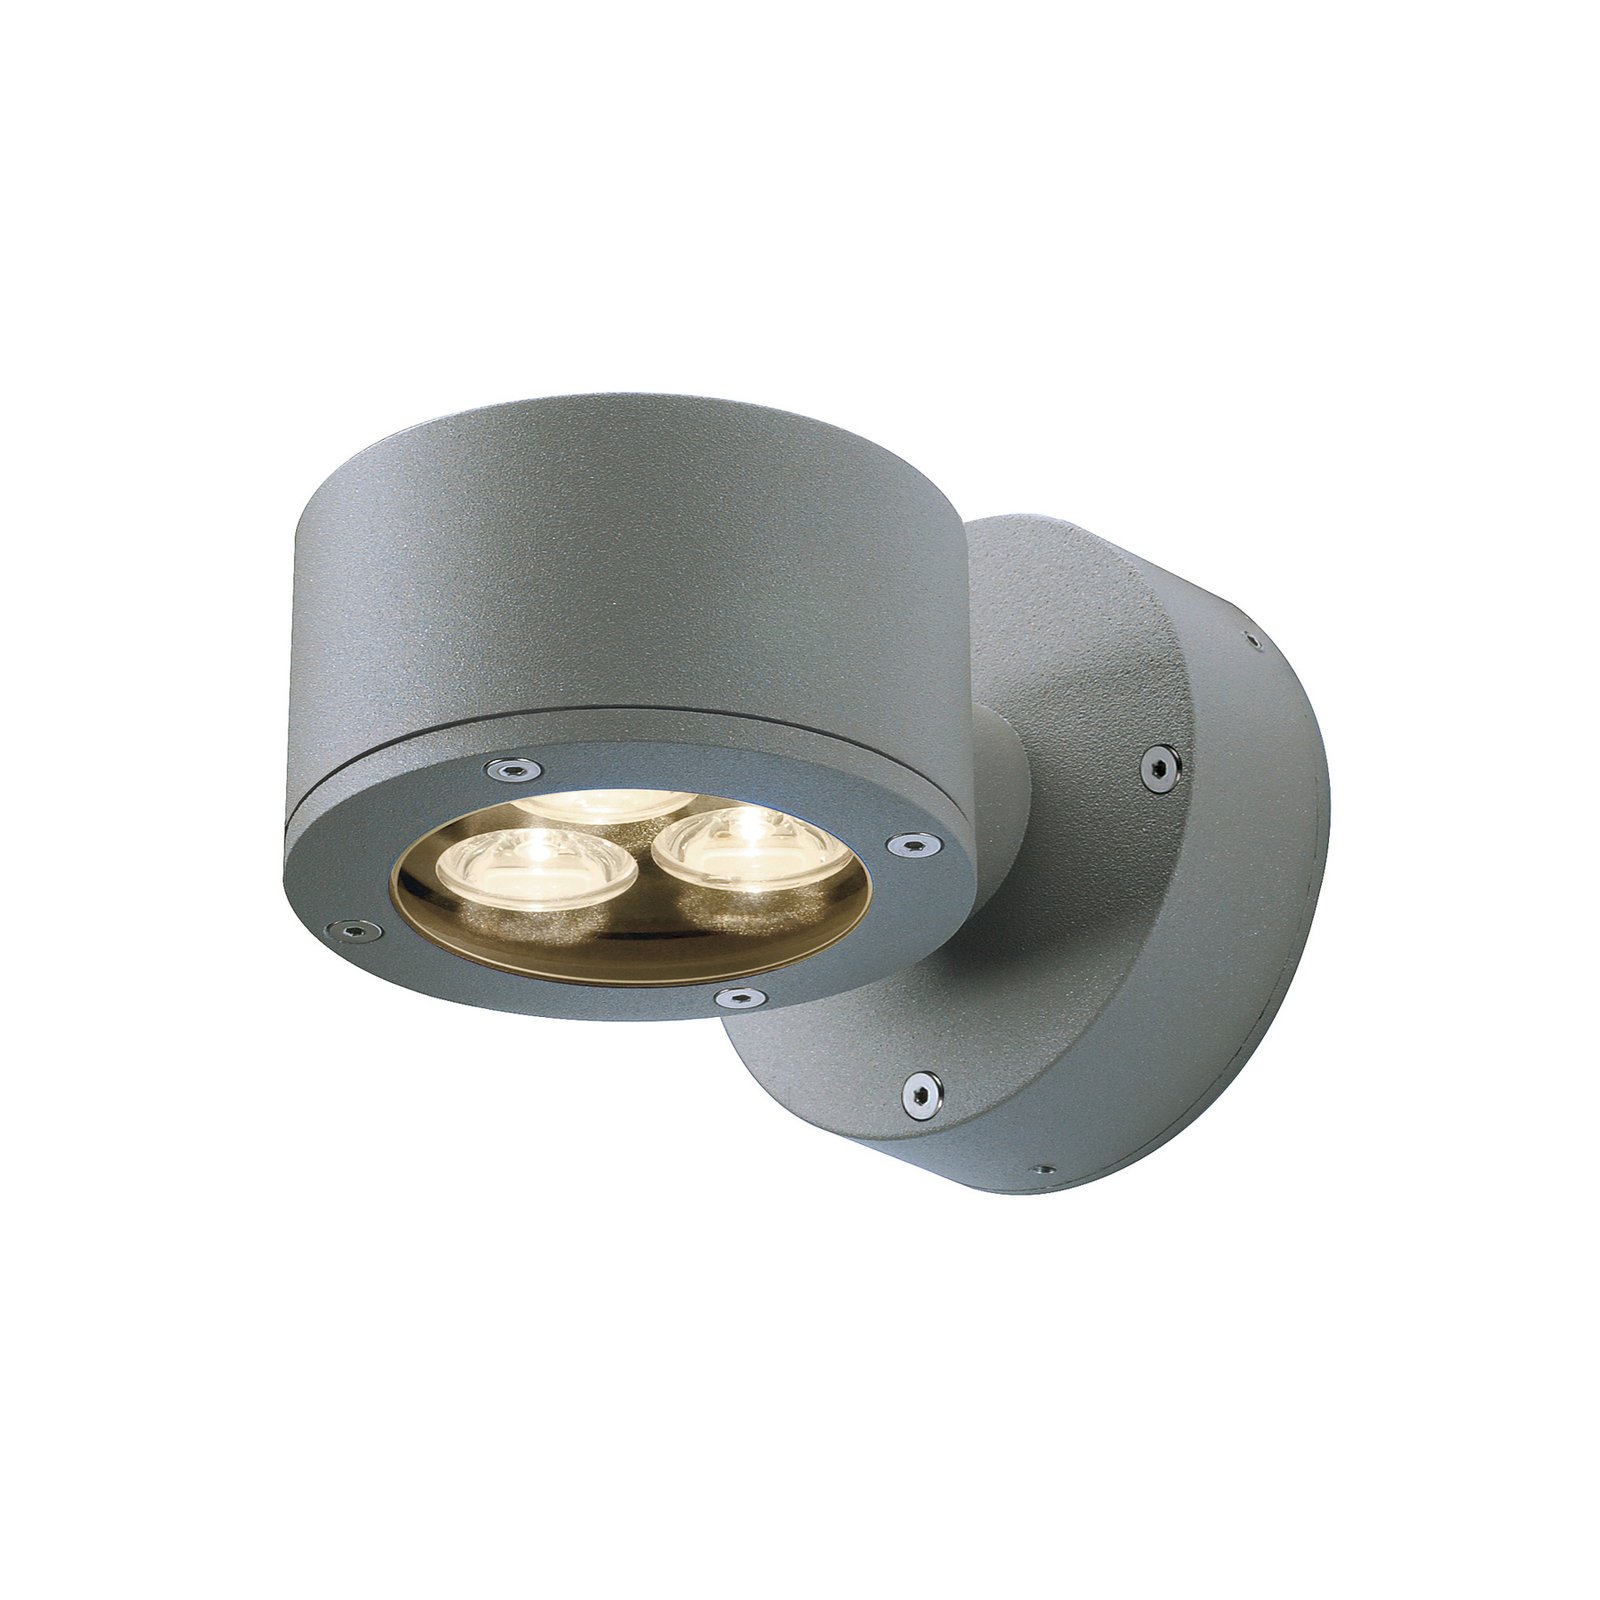 Lampa ścienna zewnętrzna SLV Sitra, antracyt, aluminium, Ø 10 cm